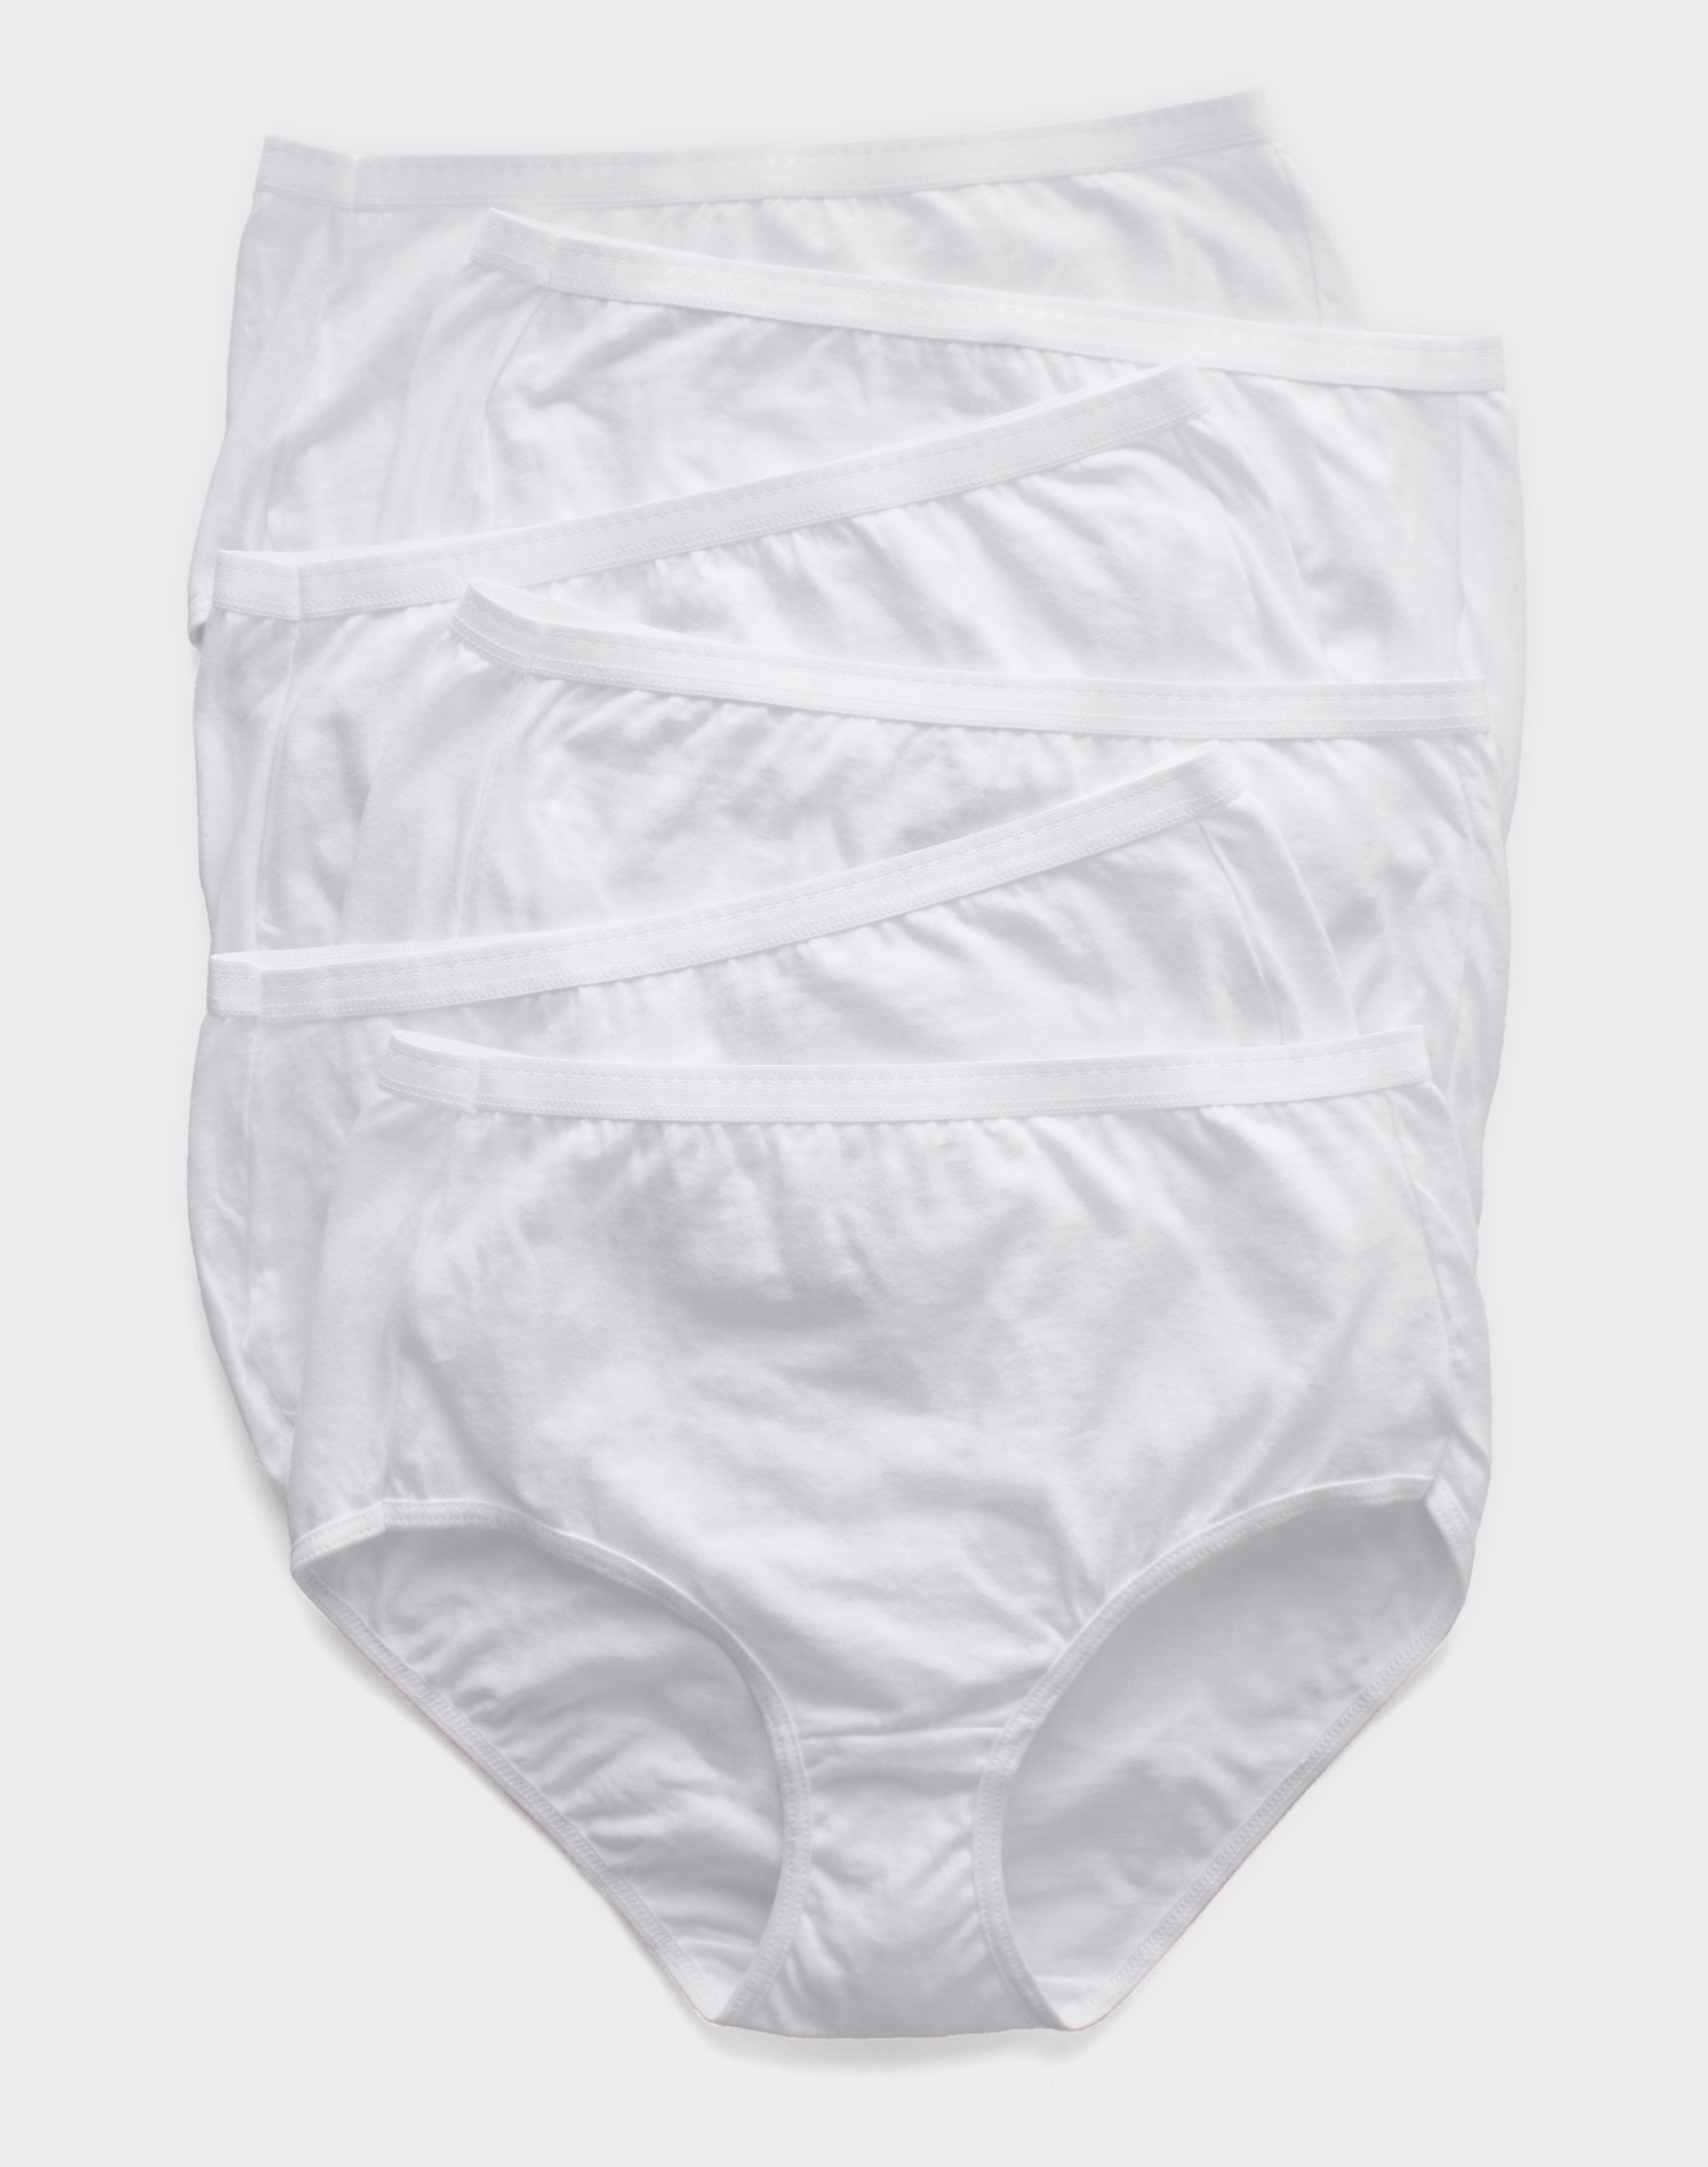 Hanes Ultimate Women's Breathable Brief Underwear, 6-Pack White/White/White/ White/White/White 9 